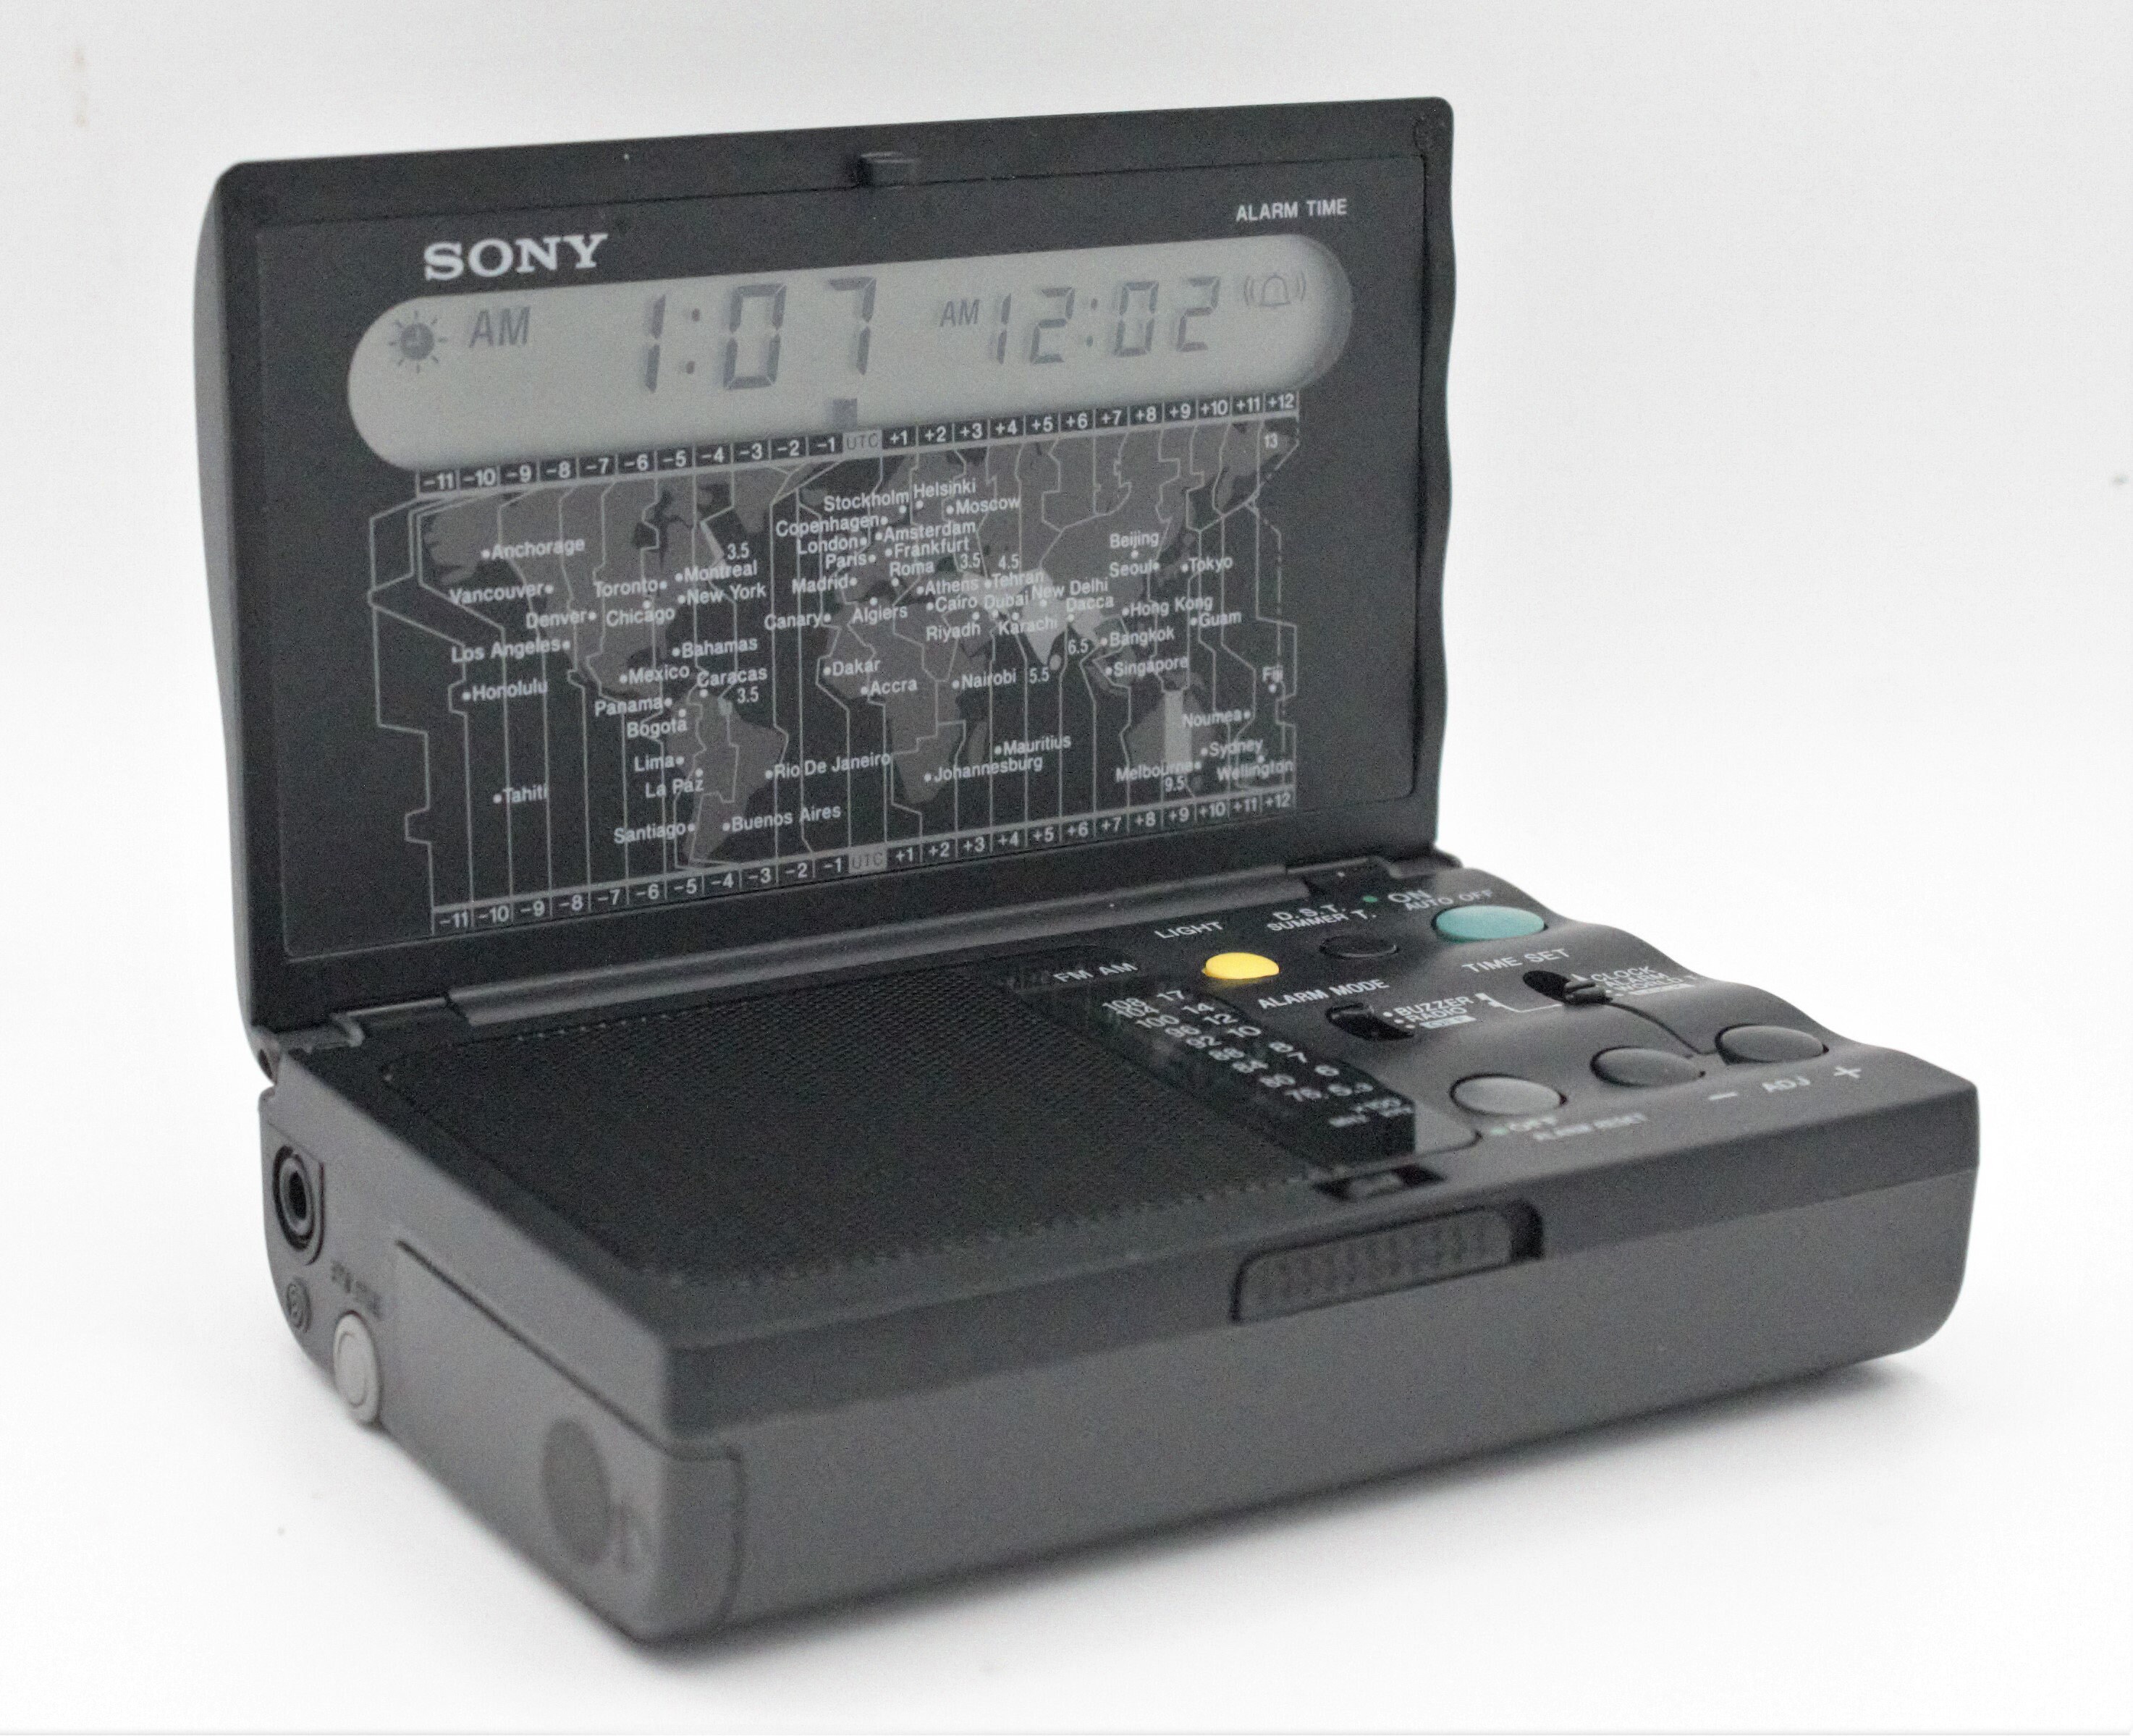 sony icf-c11w,radio reloj despertador, años 80 - Compra venta en  todocoleccion